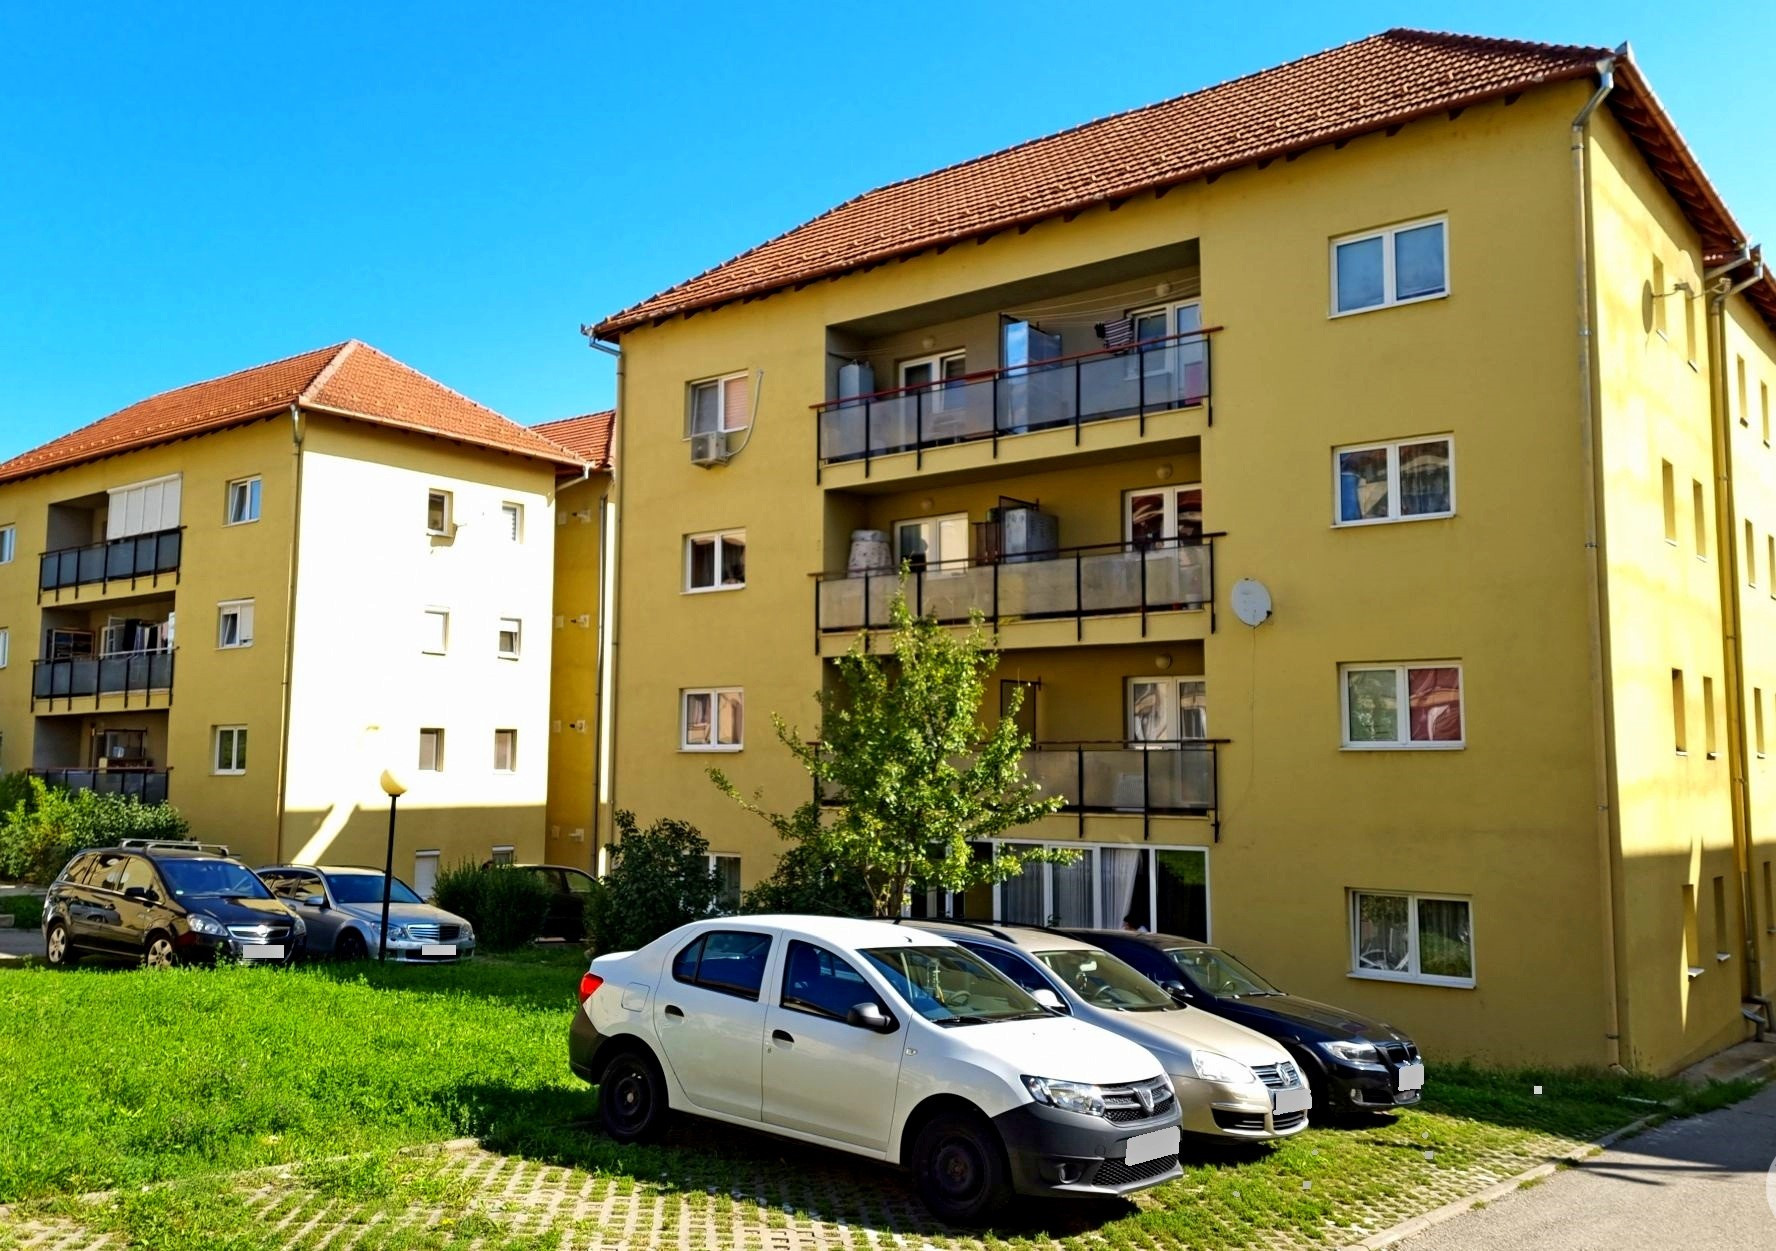 LOCUINȚE SOCIALE. Centrale termice performante pentru 41 de locuințe din zona Zăvoi